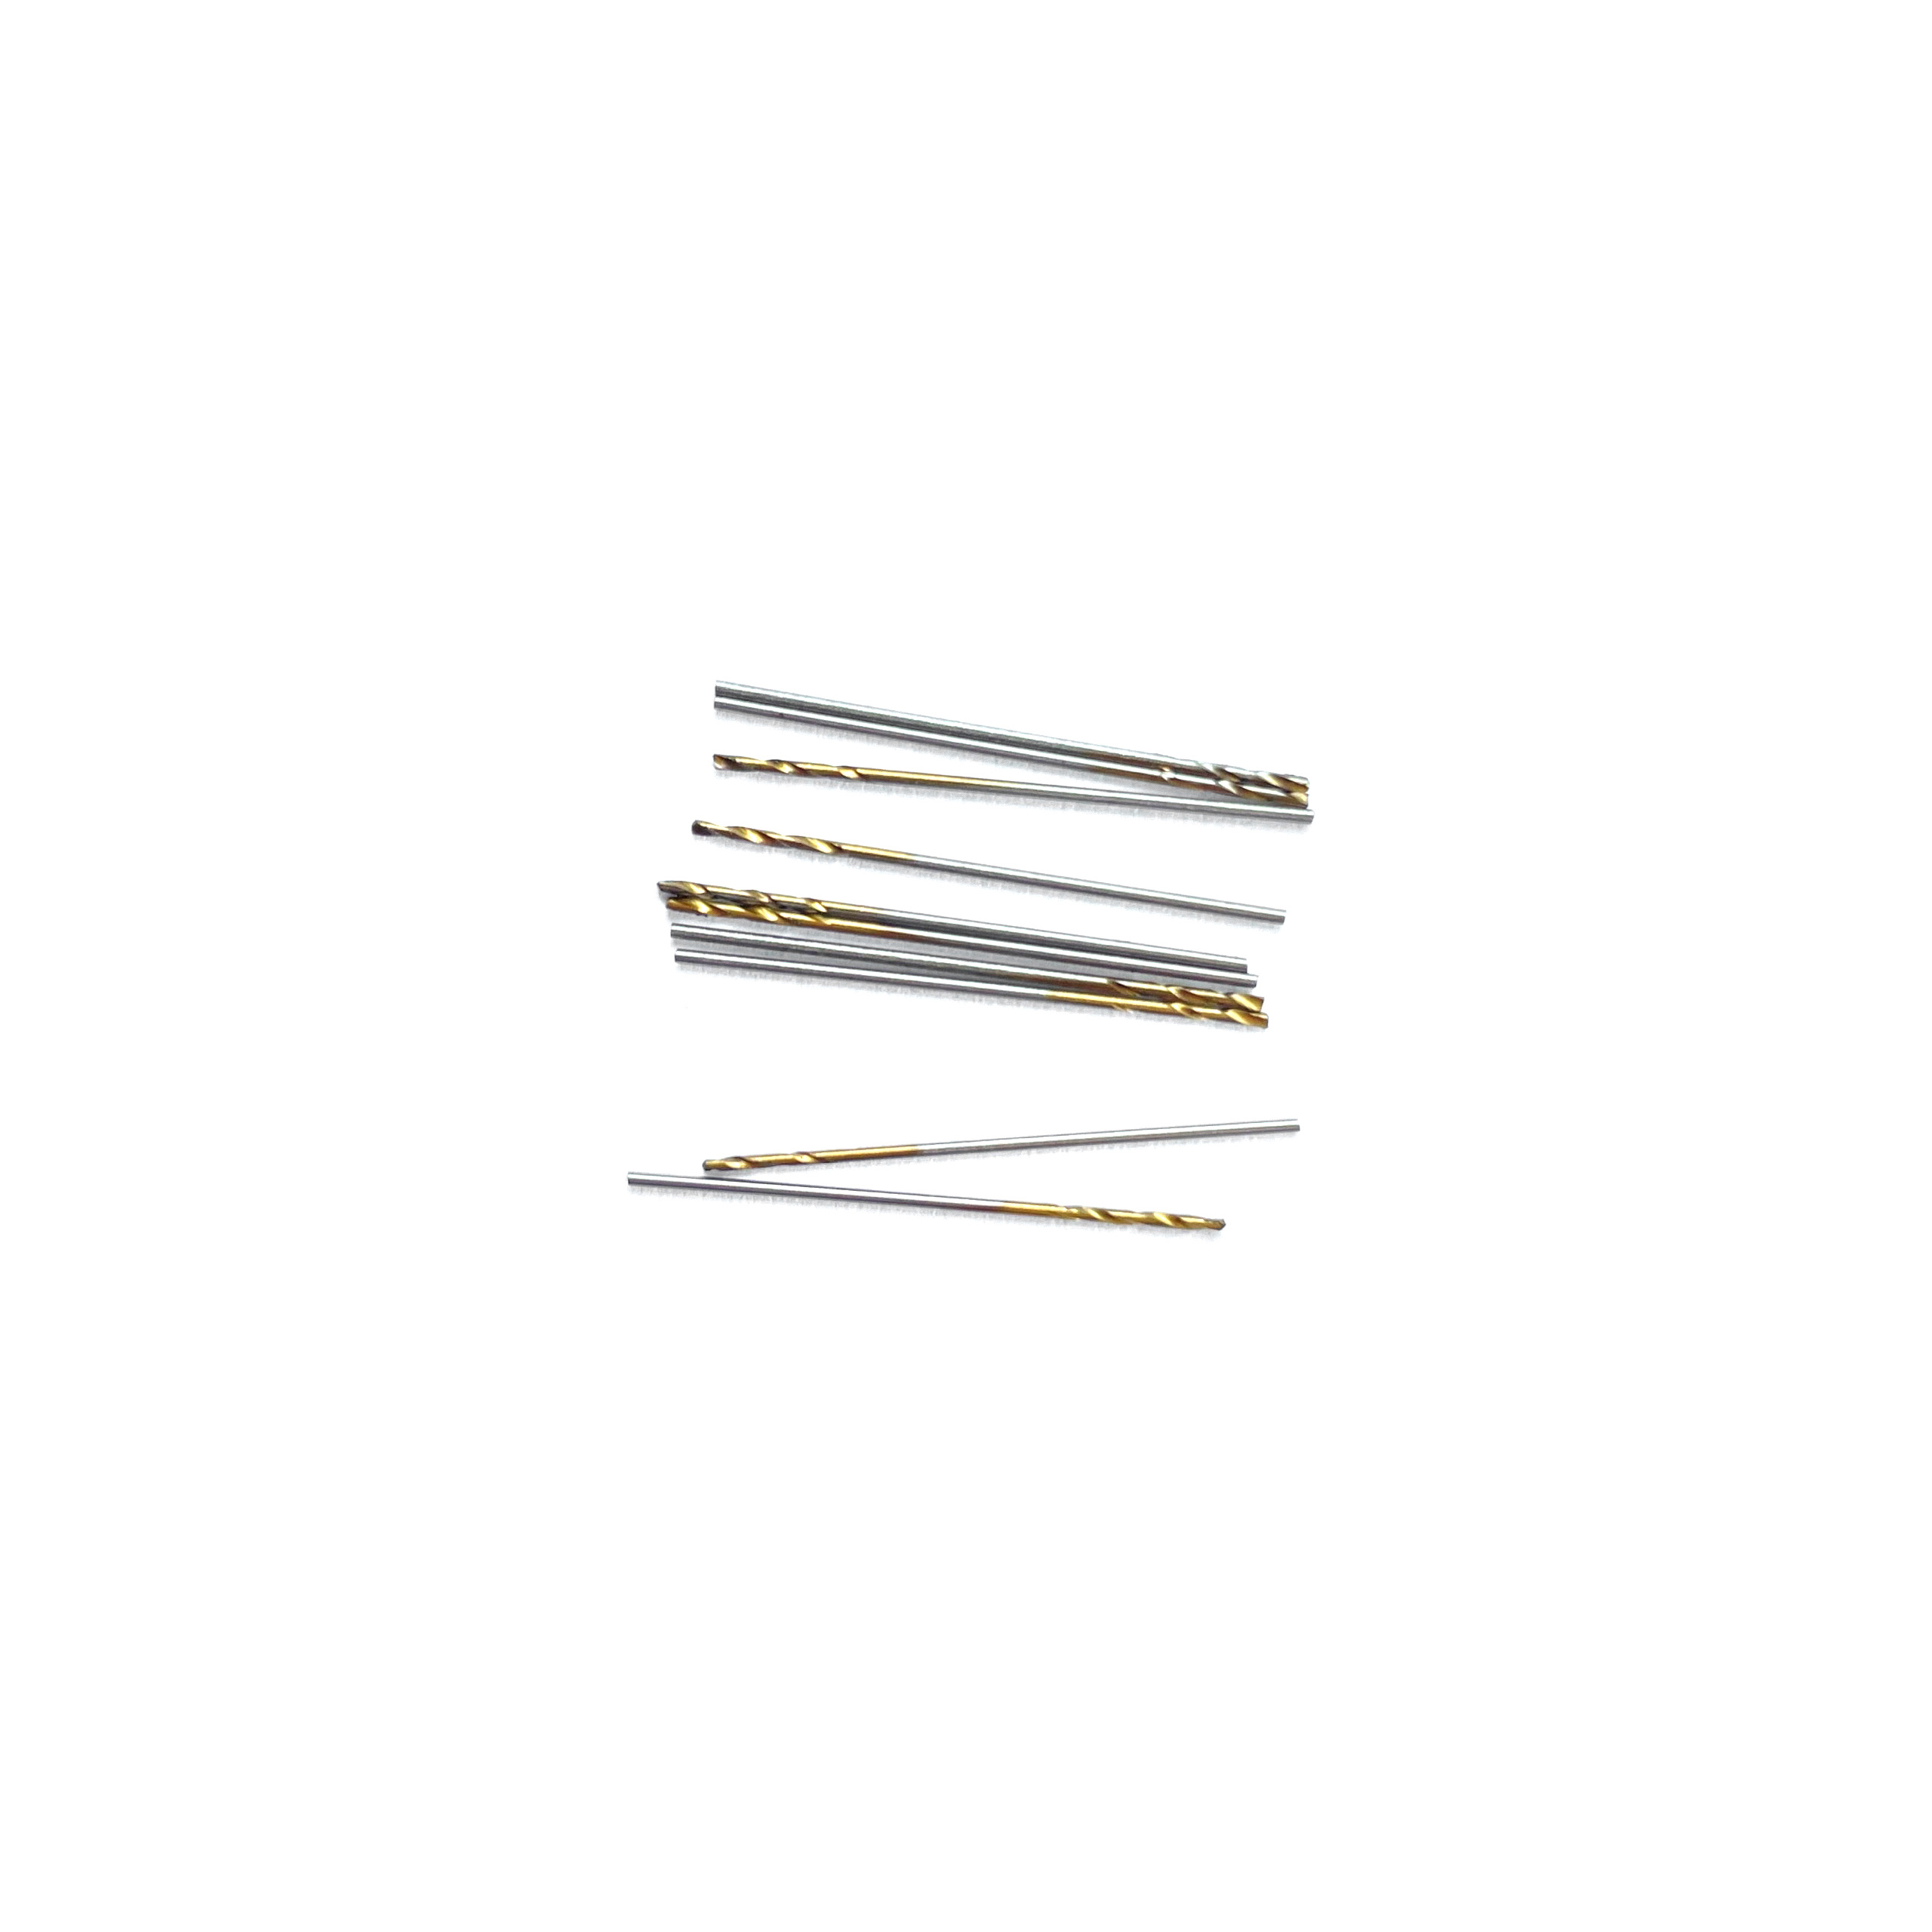 42561 JAS Mini drill HSS 6542 (M2) titanium coated d 0.6 mm 10 pcs.